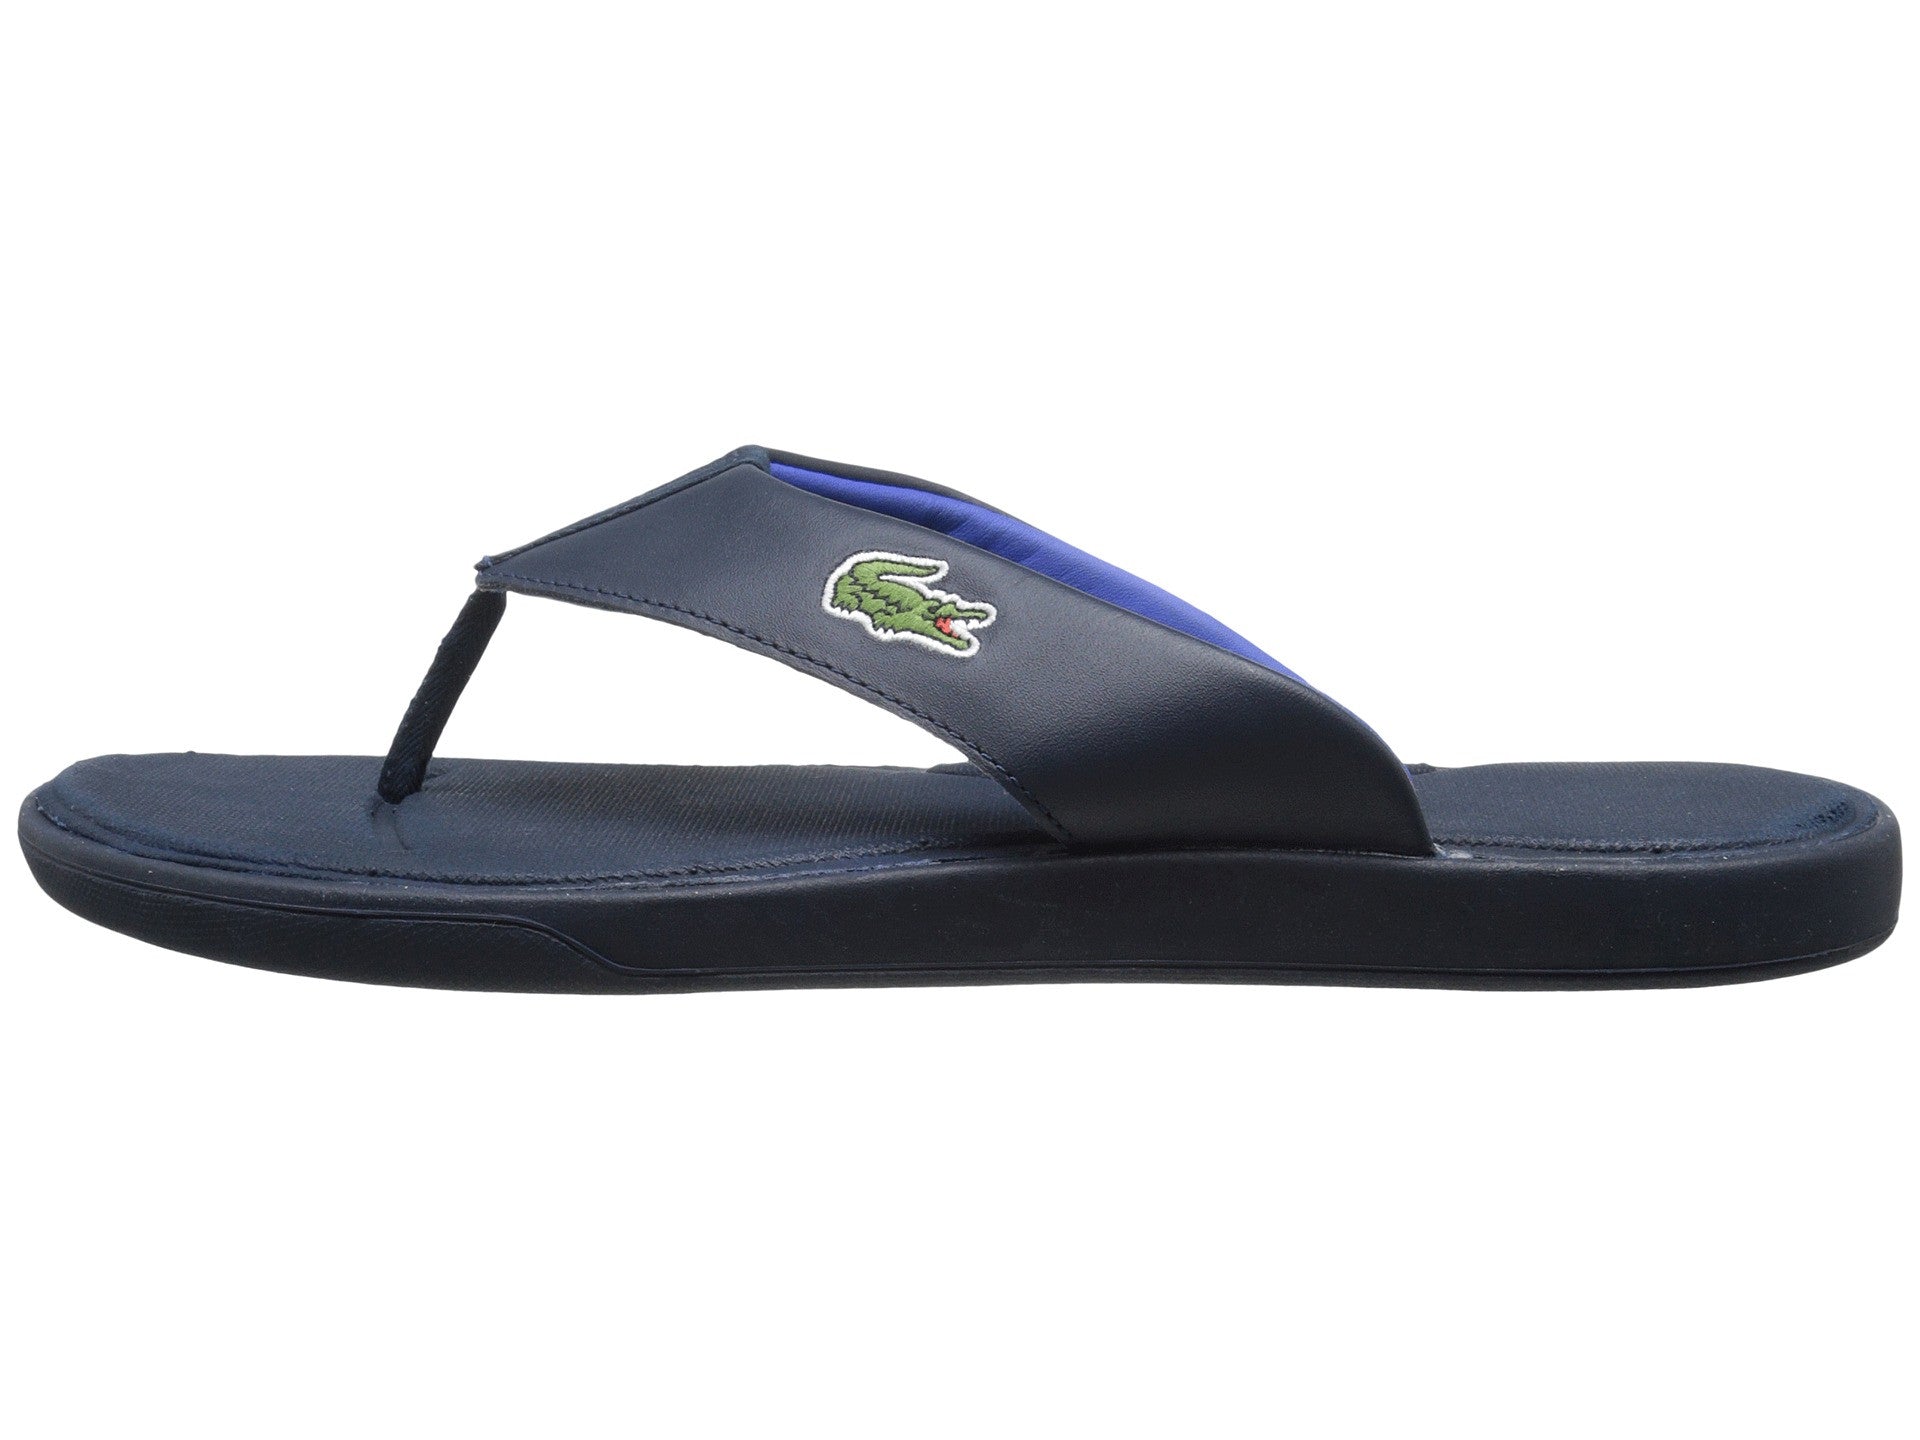 Lacoste L.30 116 1 Flip Flop Thong Sandal Shoe - Mens - Shoplifestyle